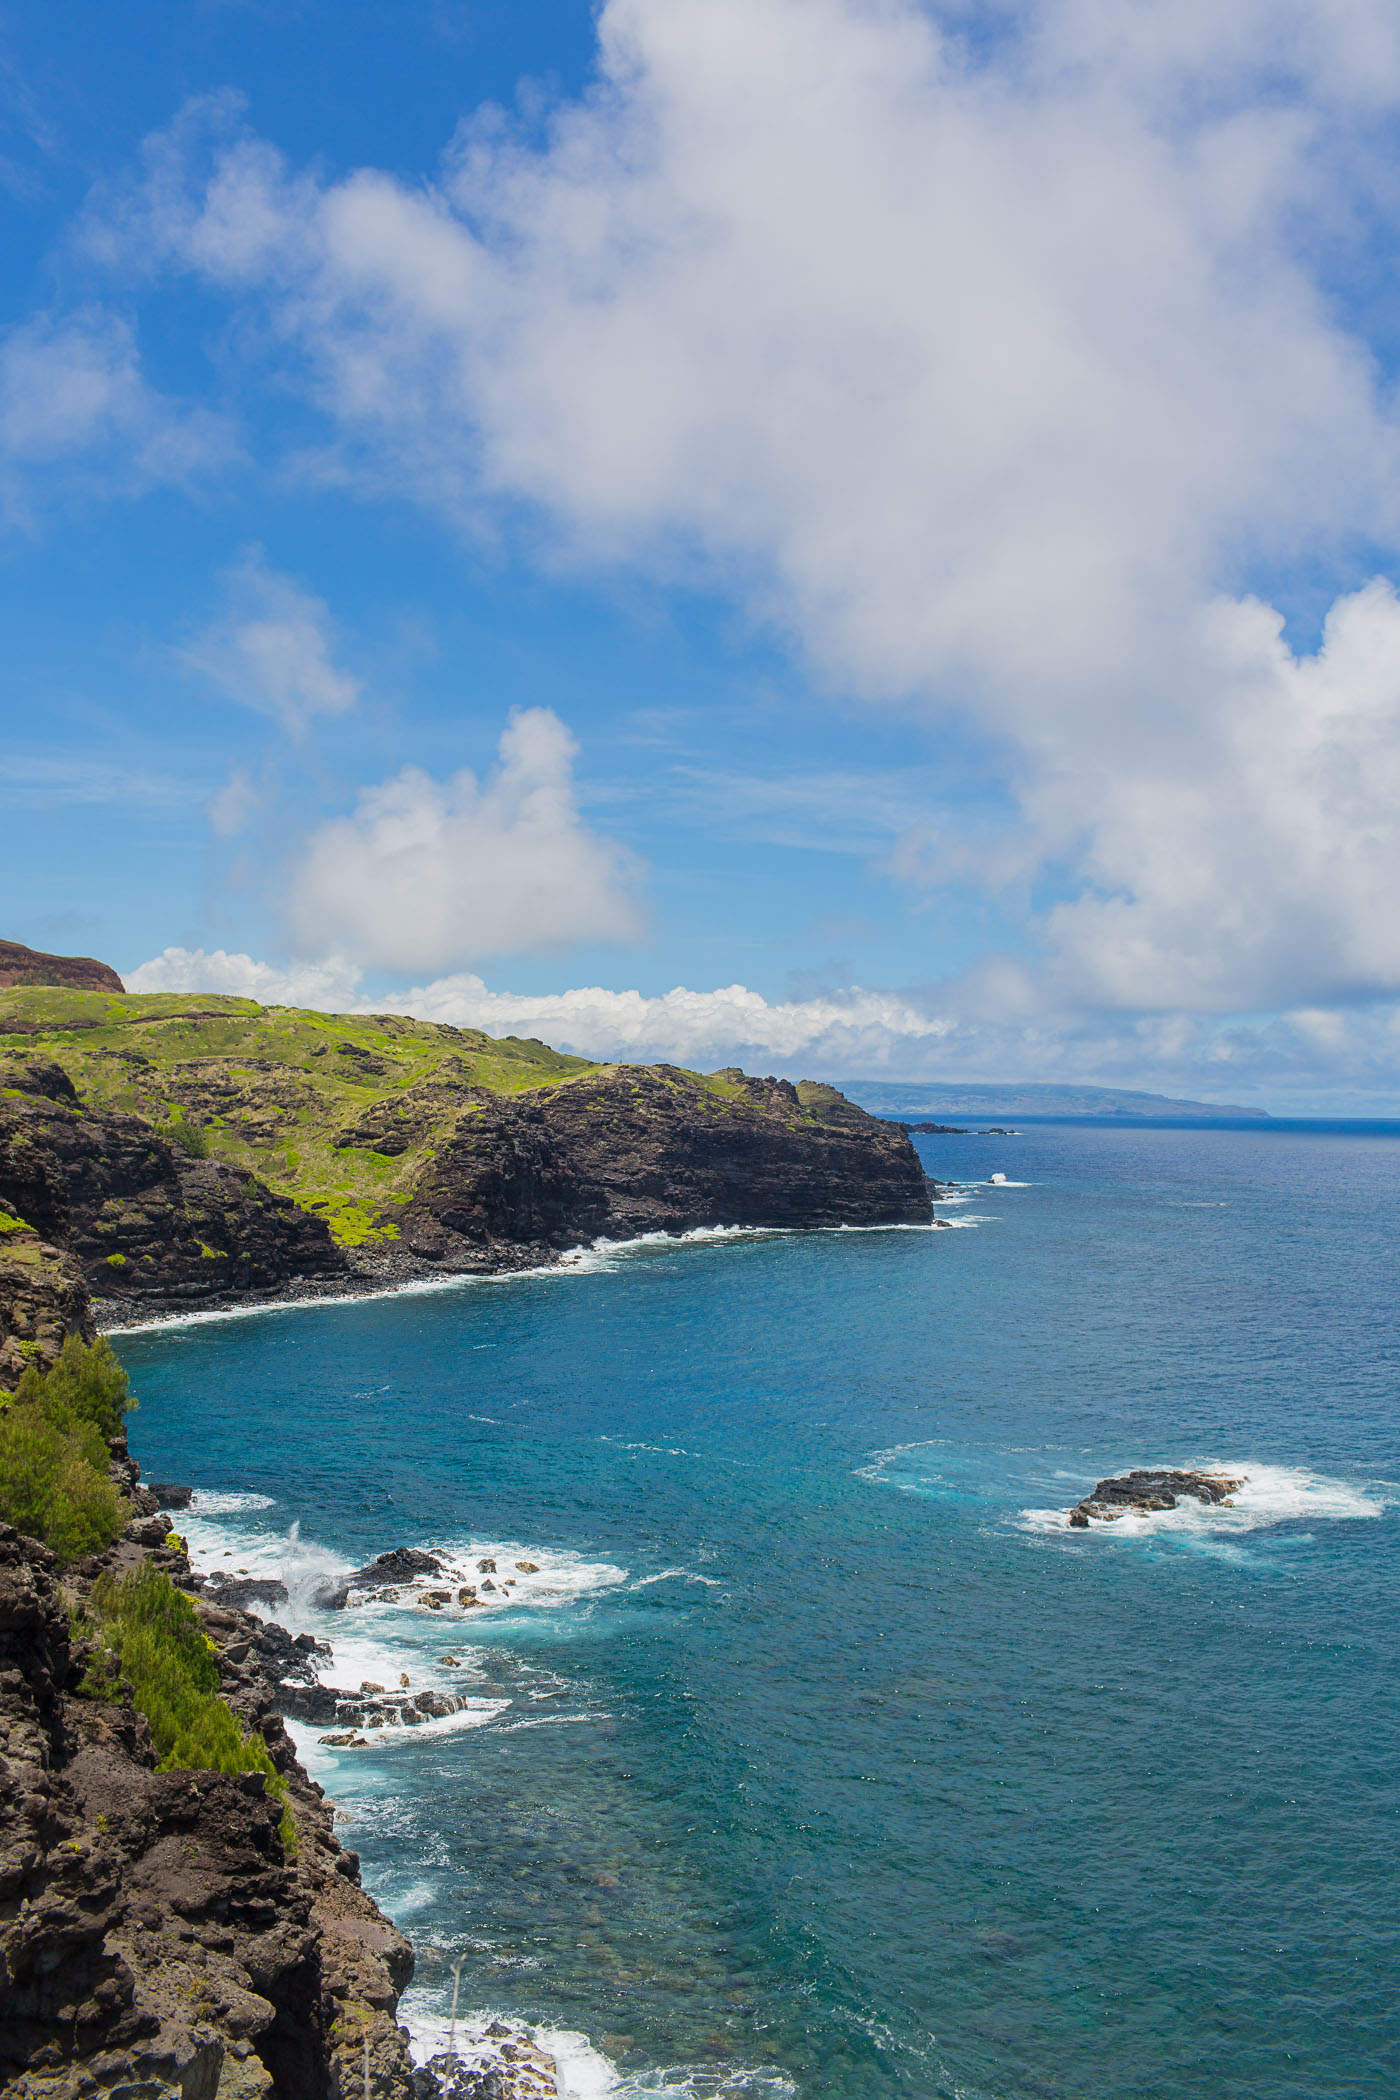 West side of Maui